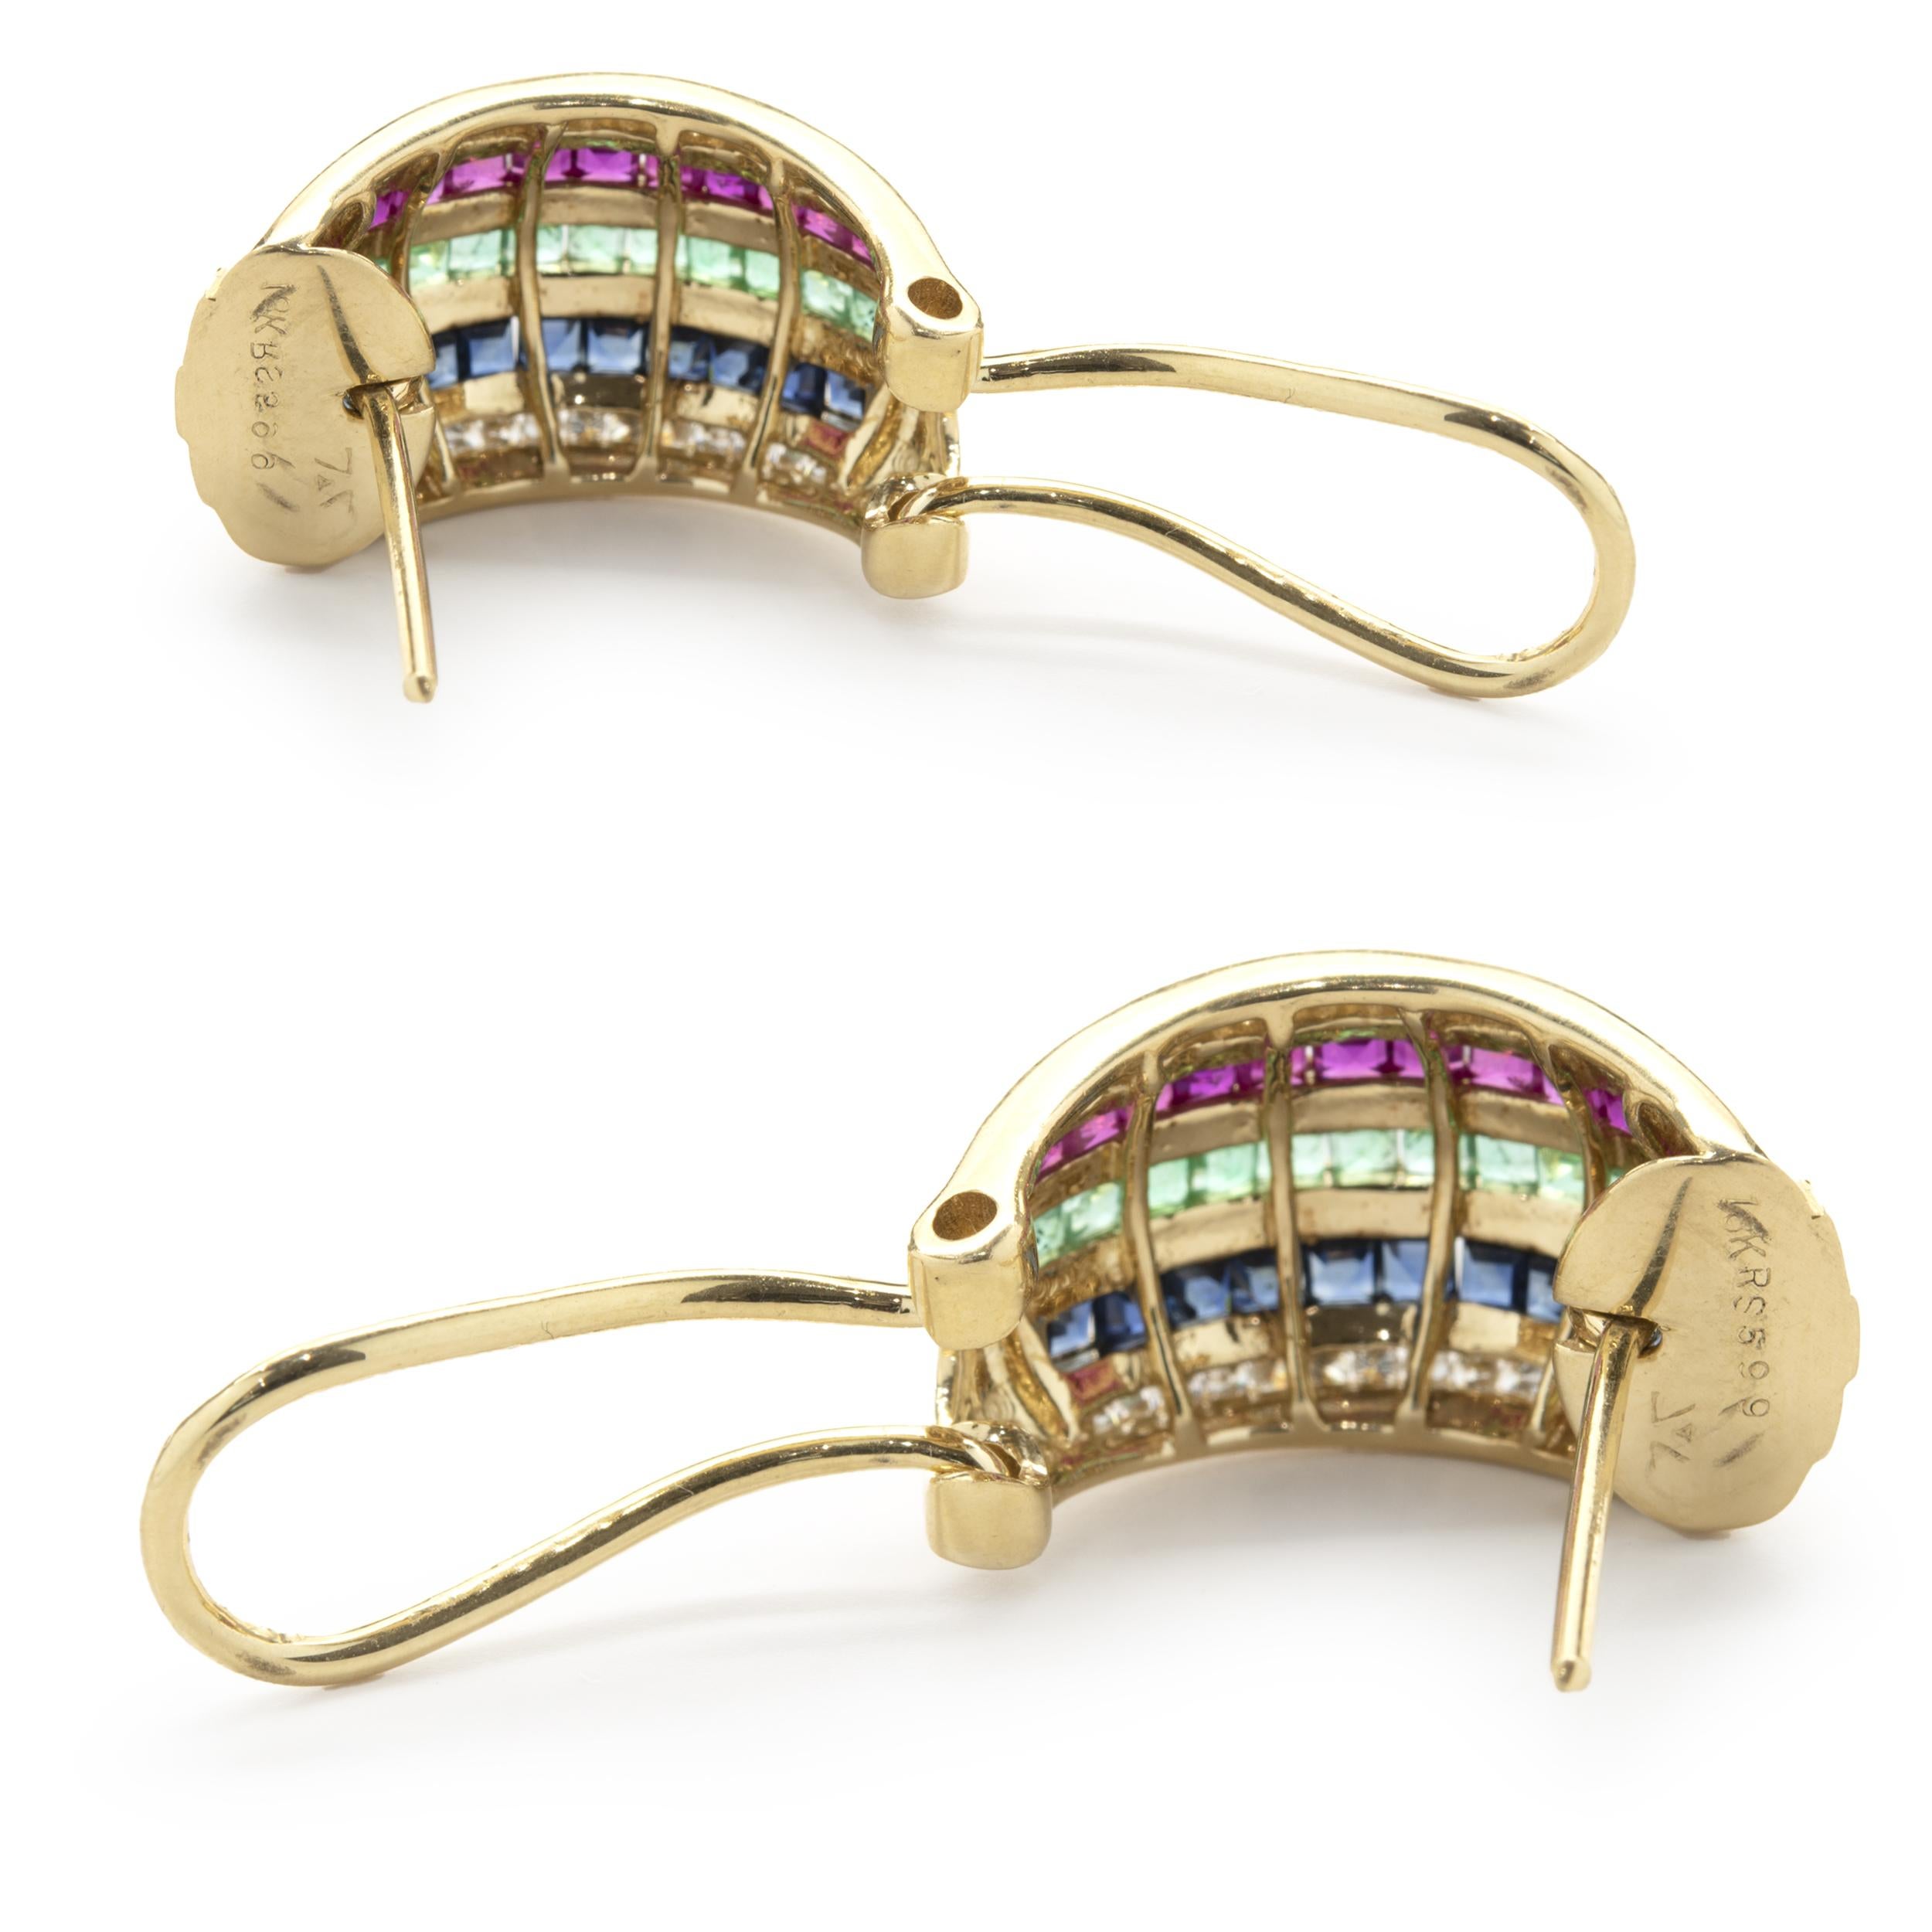 shrimp earrings gold